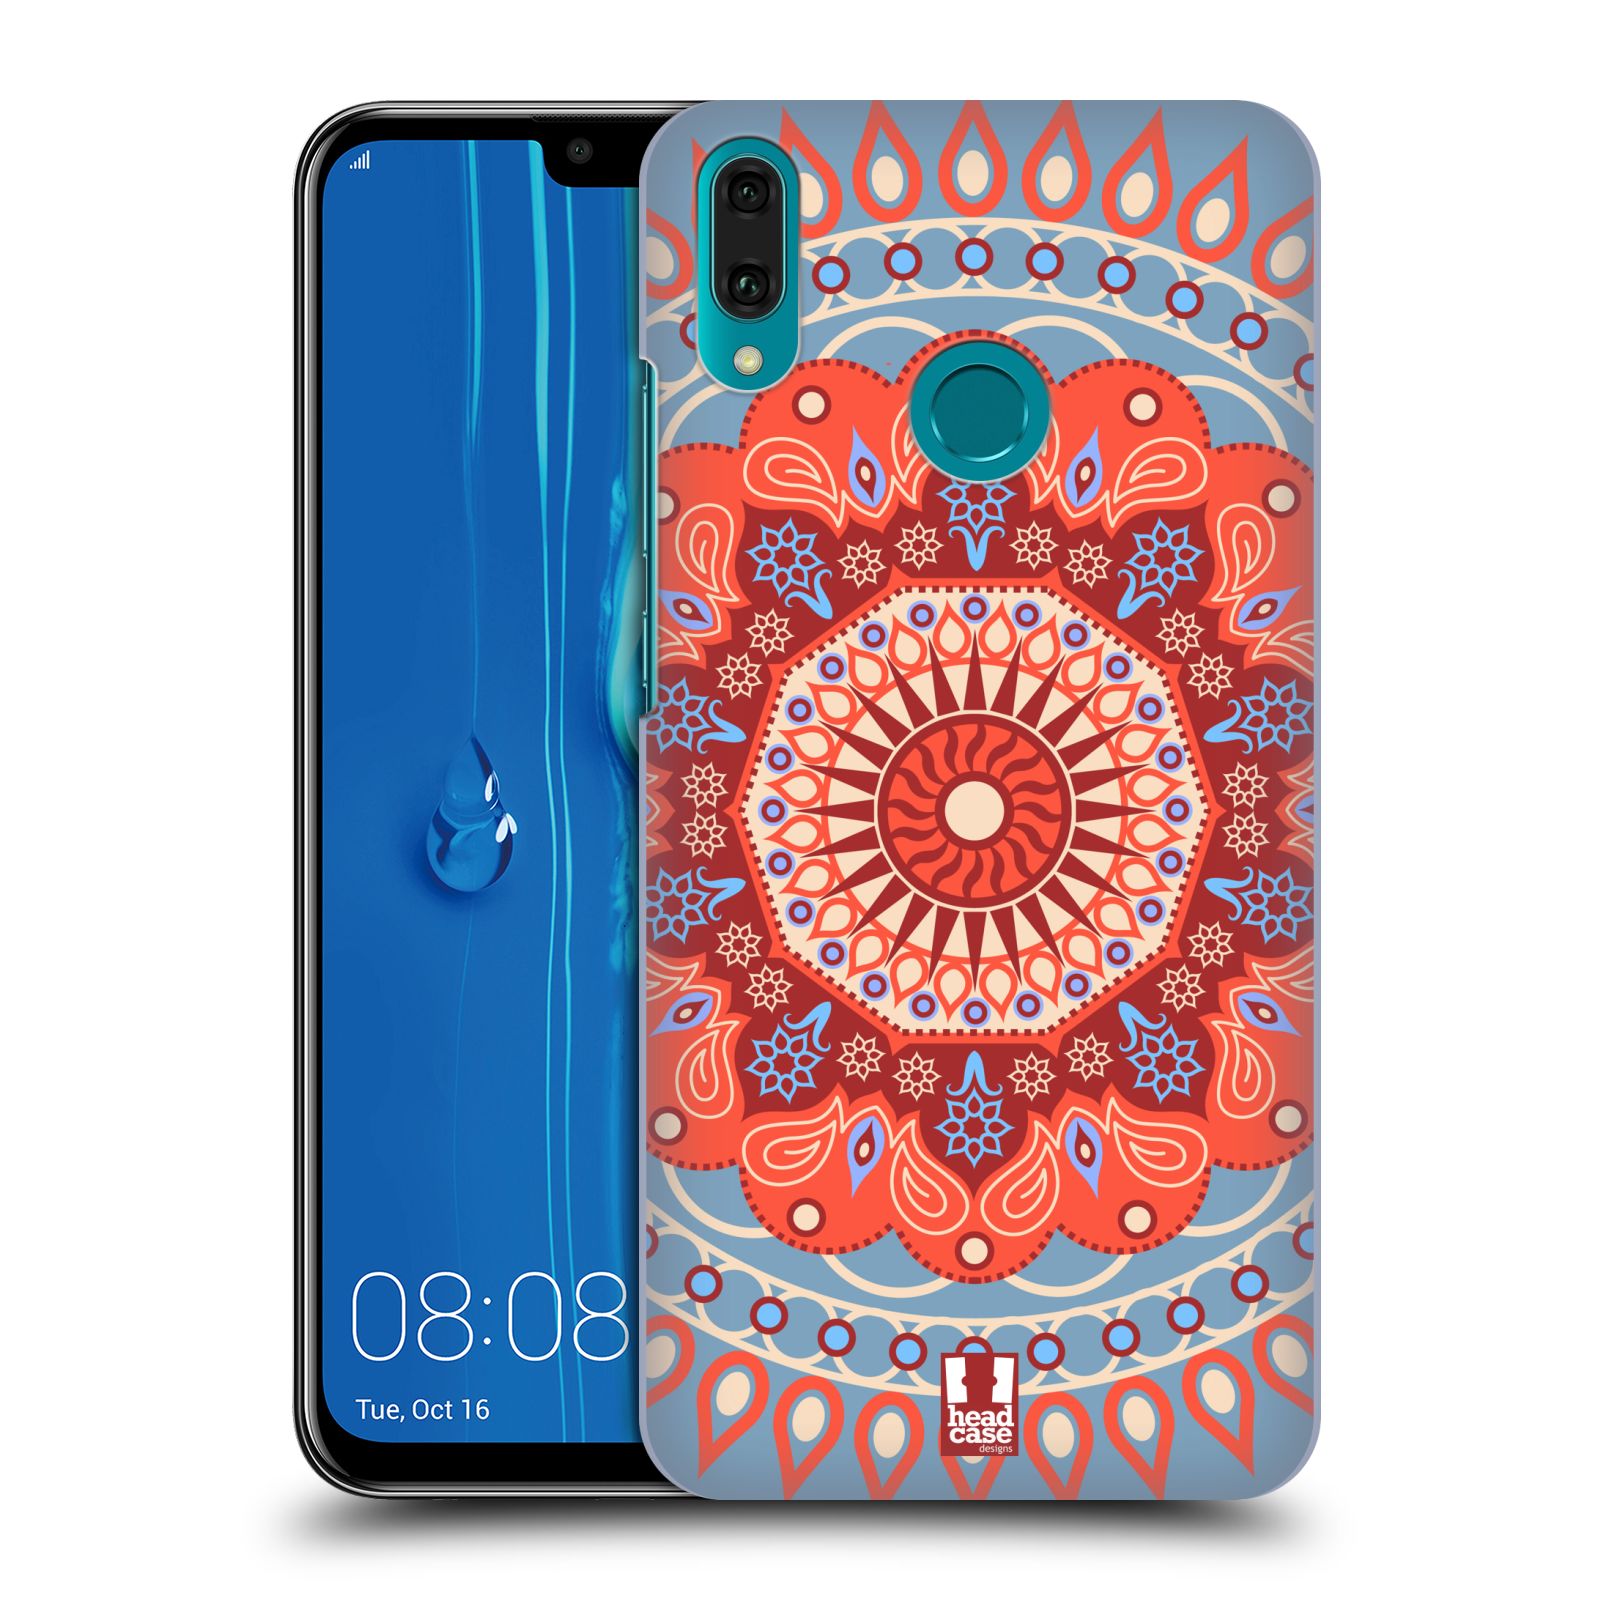 Pouzdro na mobil Huawei Y9 2019 - HEAD CASE - vzor Indie Mandala slunce barevný motiv ČERVENÁ A MODRÁ